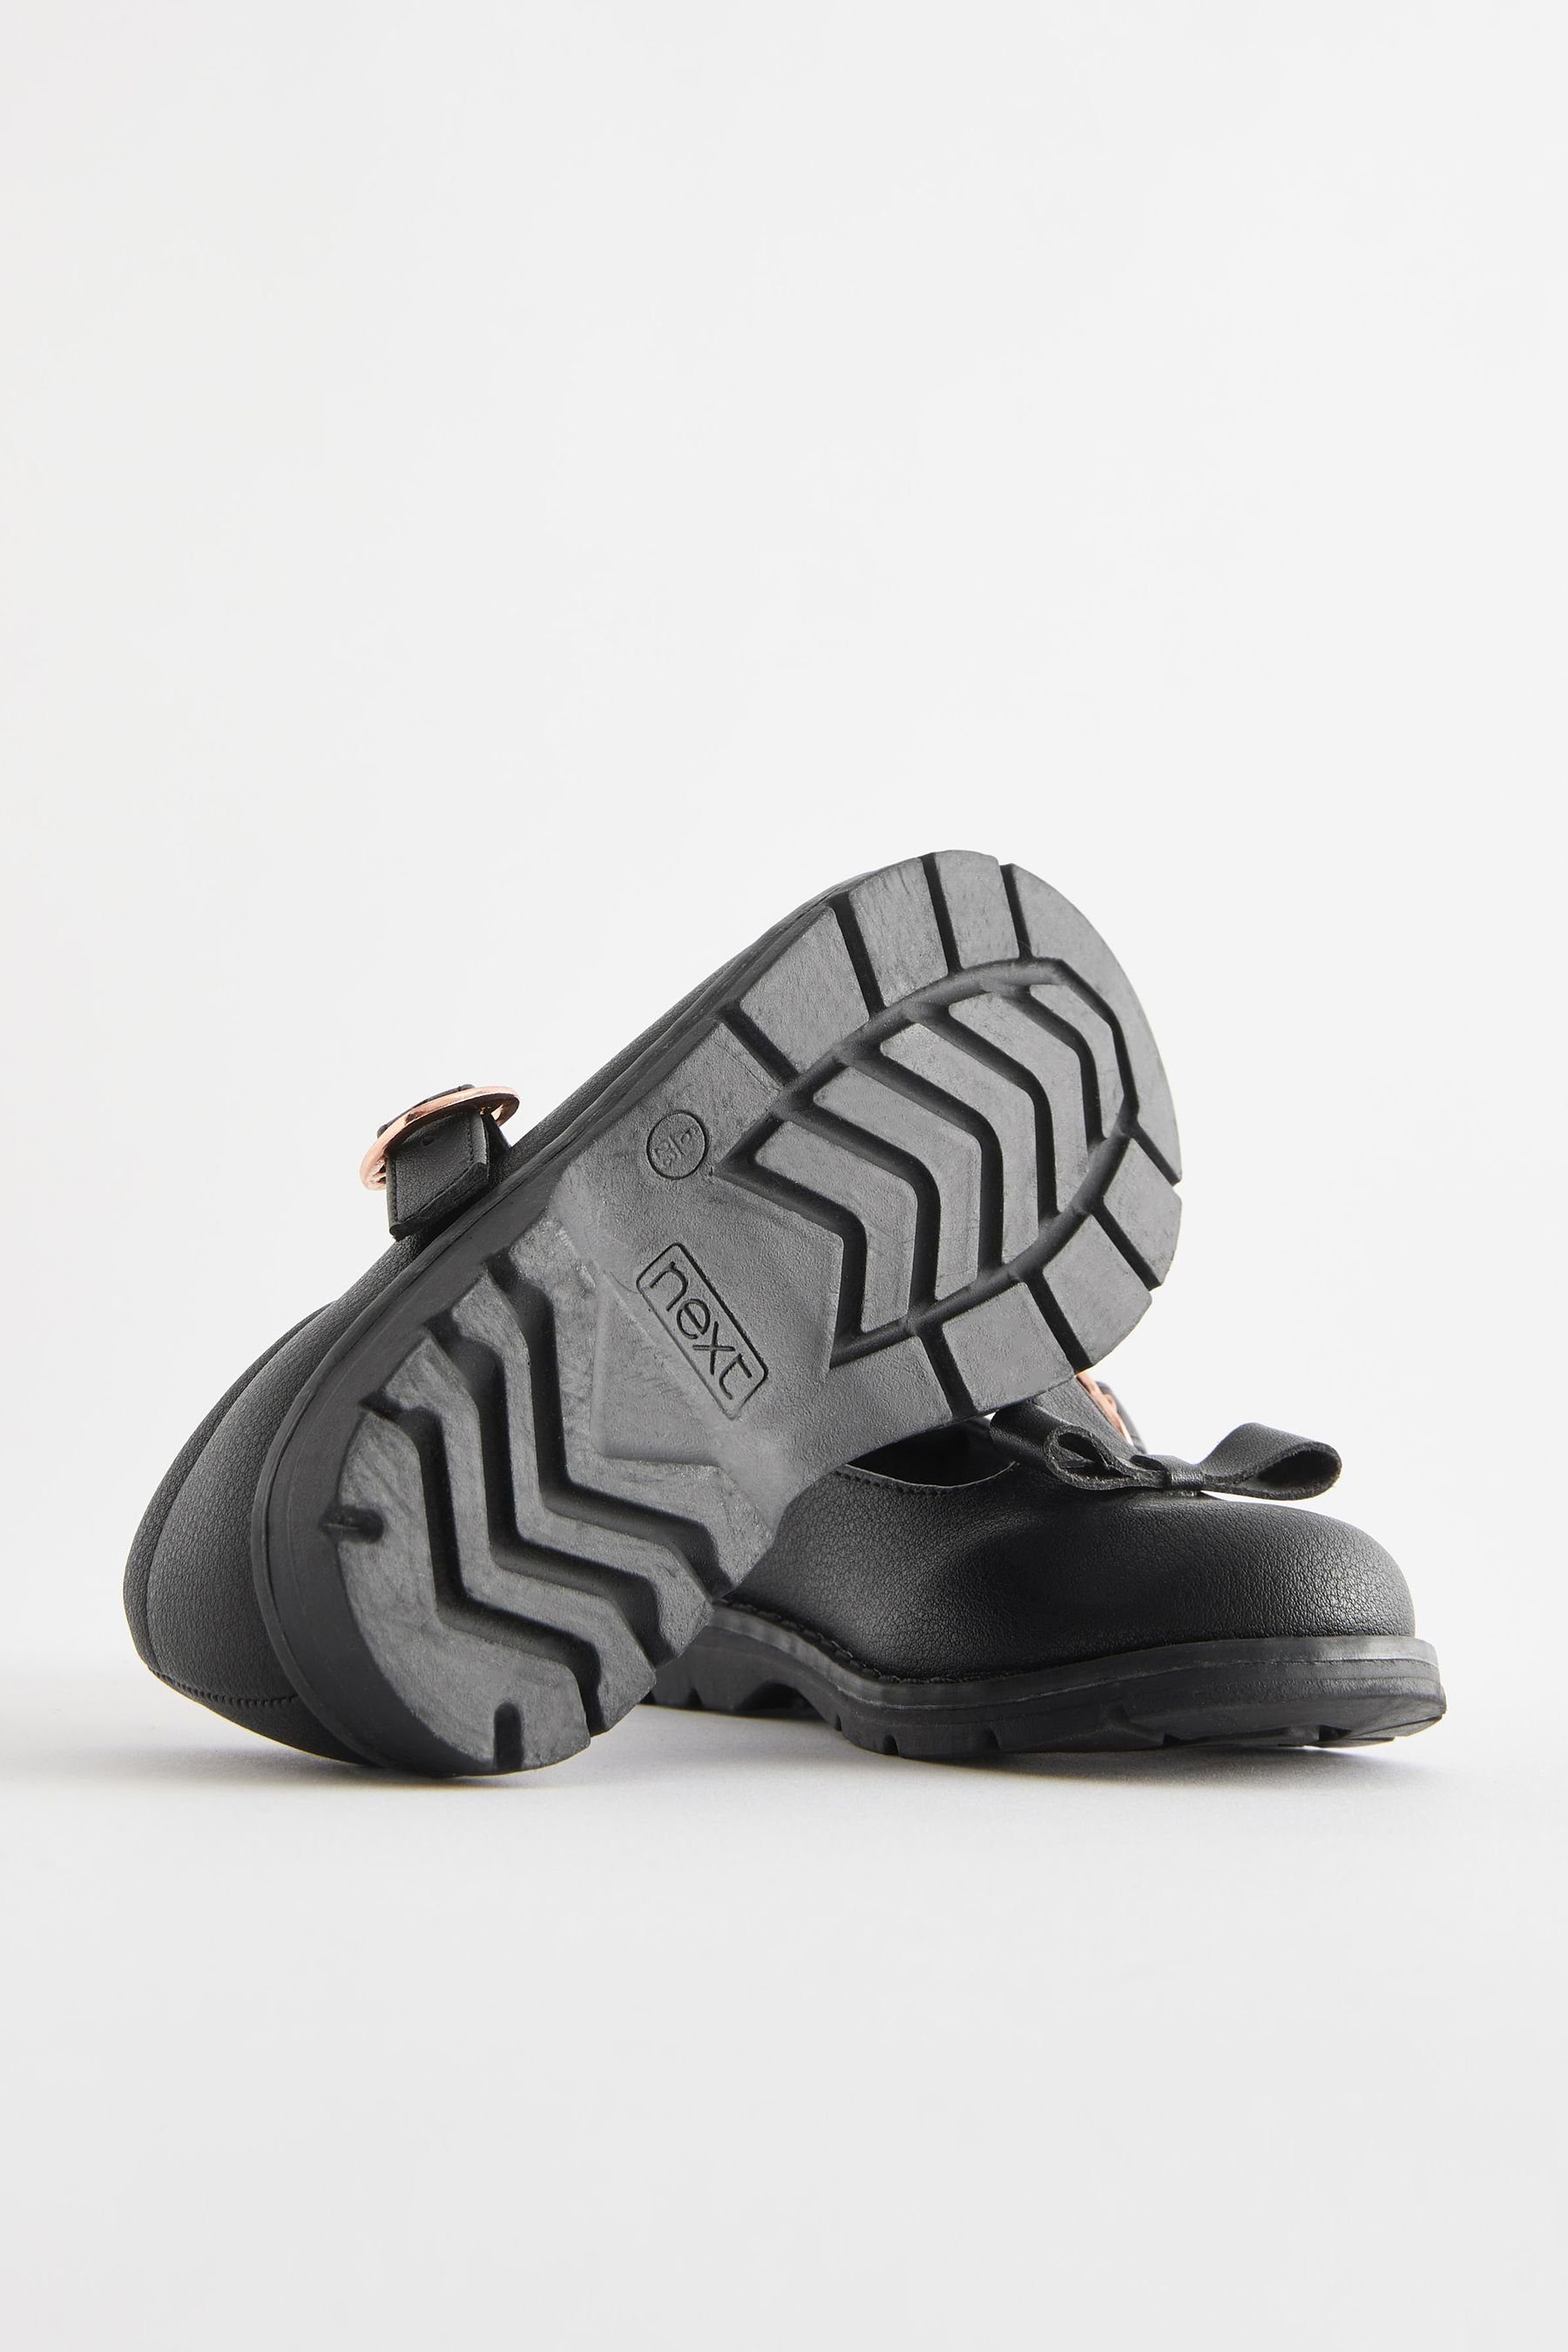 (1-tlg) T-Steg und Schleife T-Strap-Sandale Next Kleinkinder-Schuhe Black mit